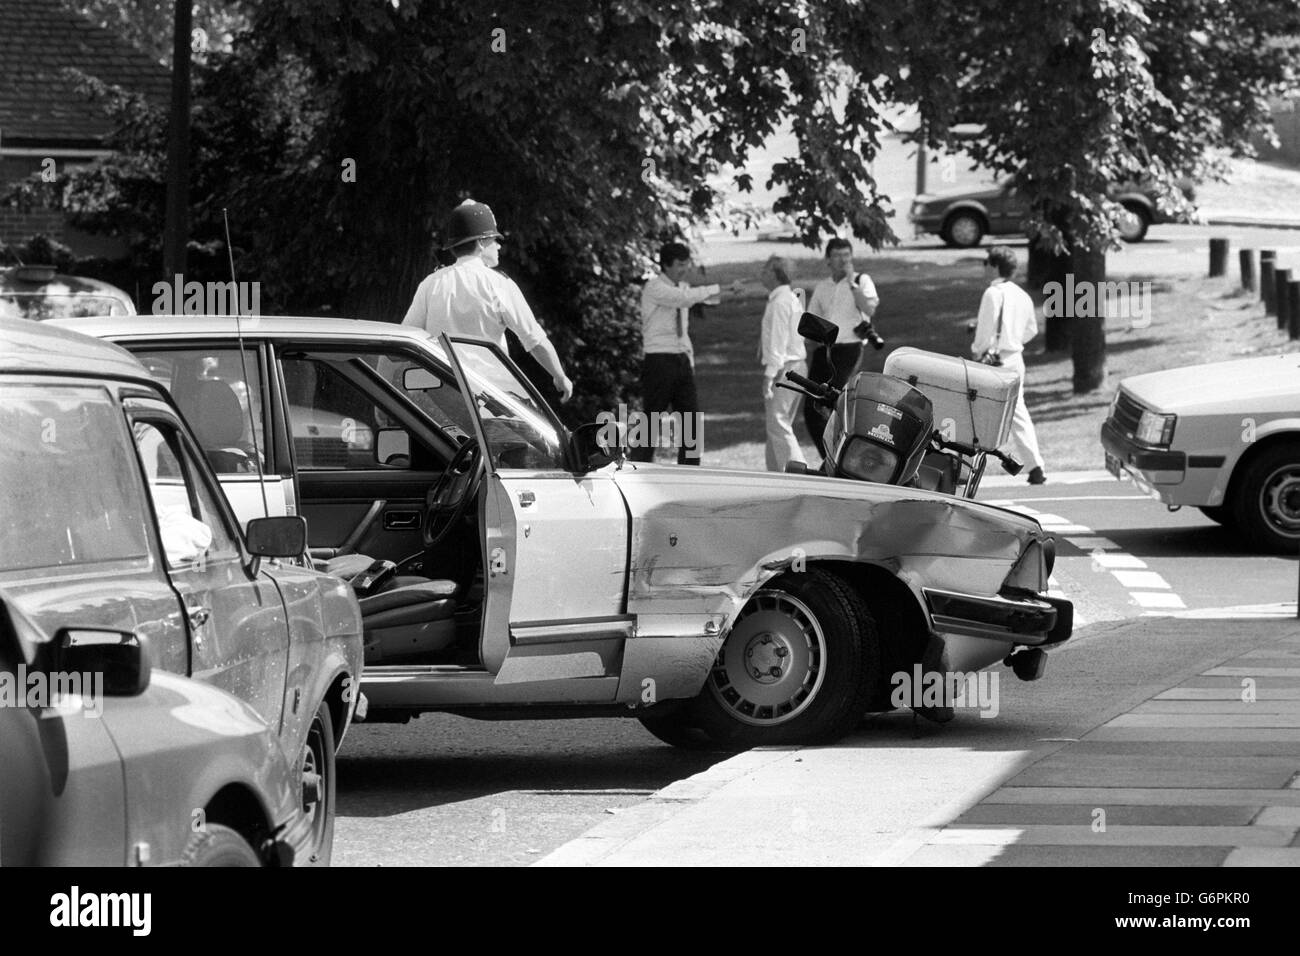 L'épave de Ford Granada utilisé dans une tentative d'escapade, après un vol à main armée s'est mal passé dans Shooter's Hill, Londres.La police a abattu deux hommes impliqués dans l'incident. Banque D'Images